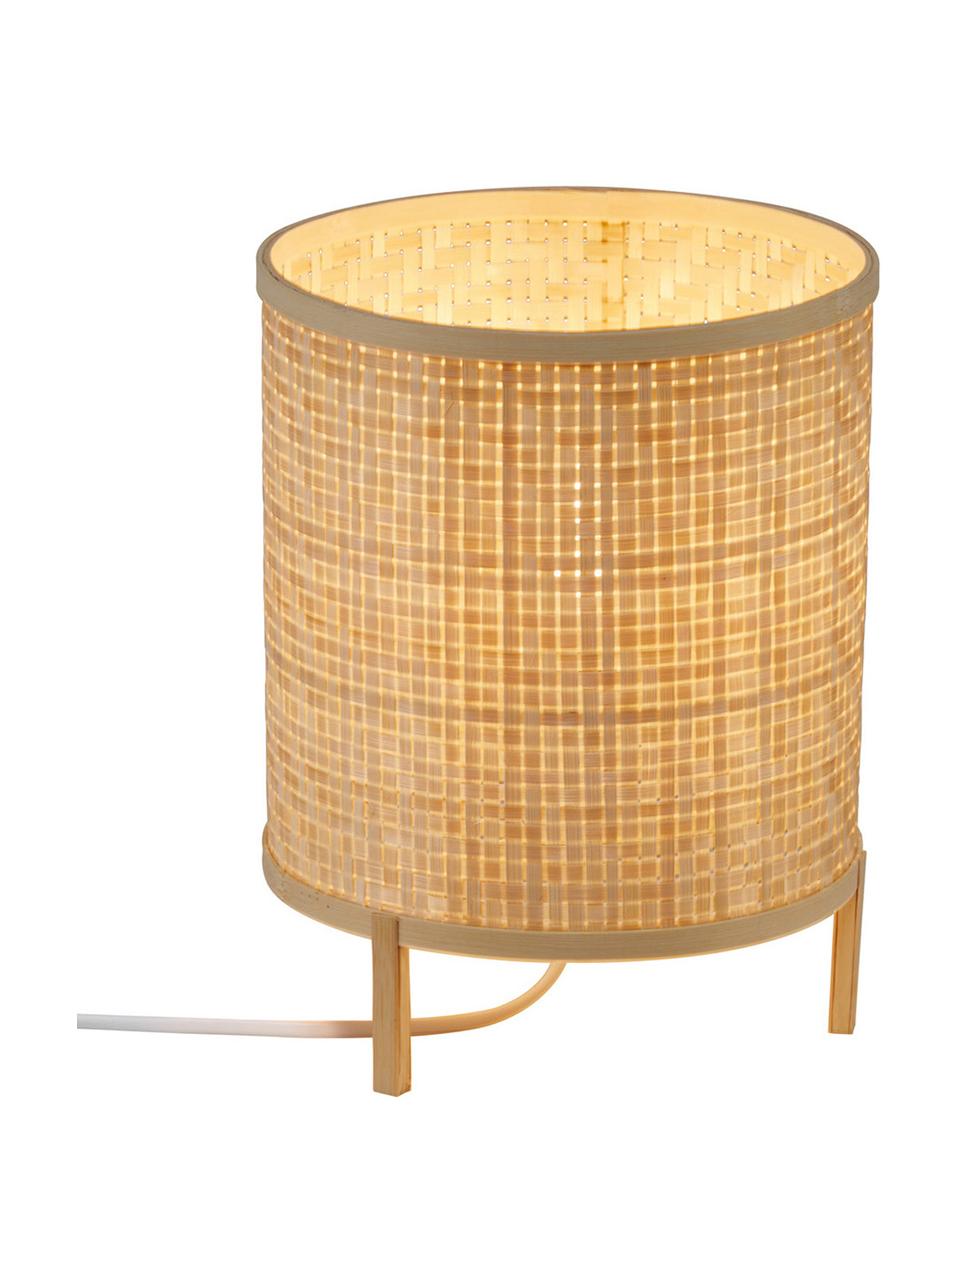 Kleine Tischlampe Trinidad aus Bambus, Lampenschirm: Bambusgeflecht, Braun, Ø 19 x H 25 cm